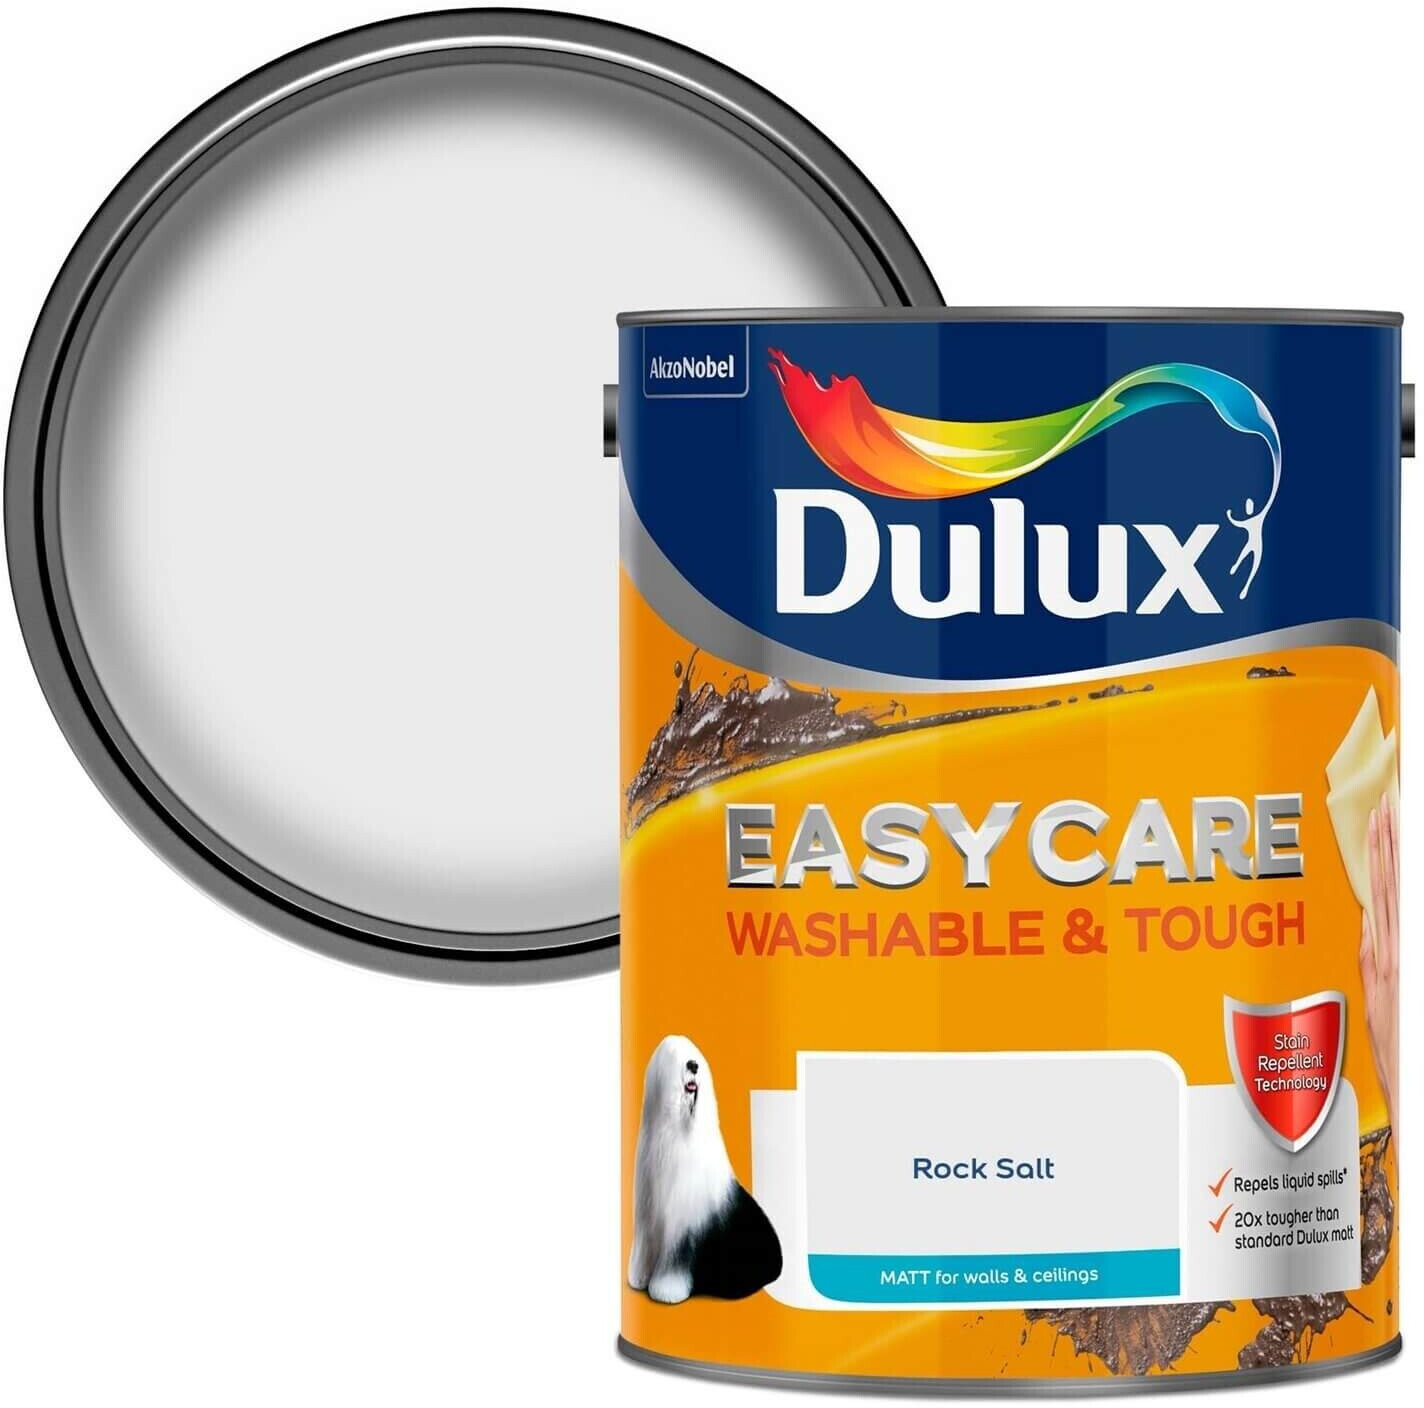 Buy Dulux Easycare Washable & Tough Rock Salt Matt Paint